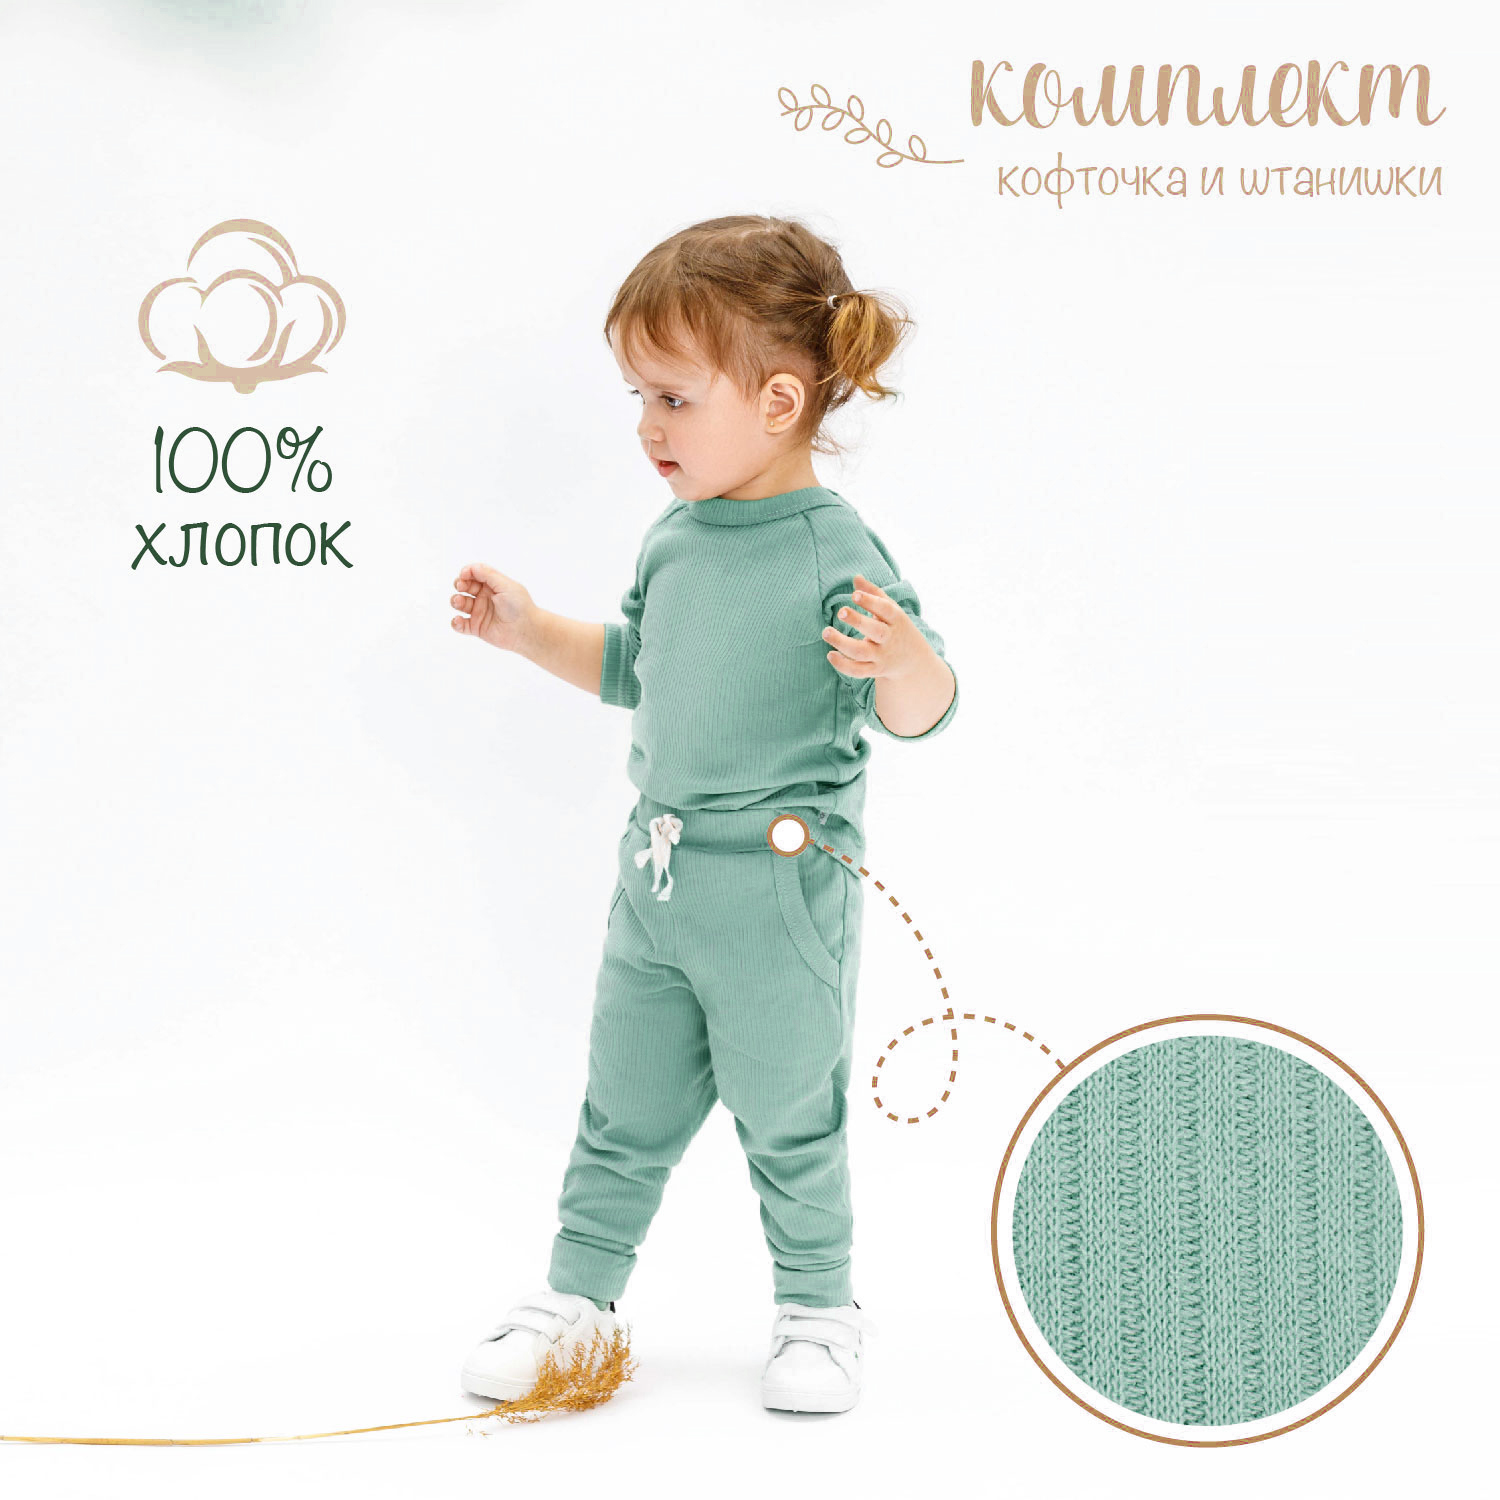 Кофточка и ползунки (штанишки) детские AMAROBABY Fashion, зеленый, размер 68 manymonths штанишки леггинсы детские